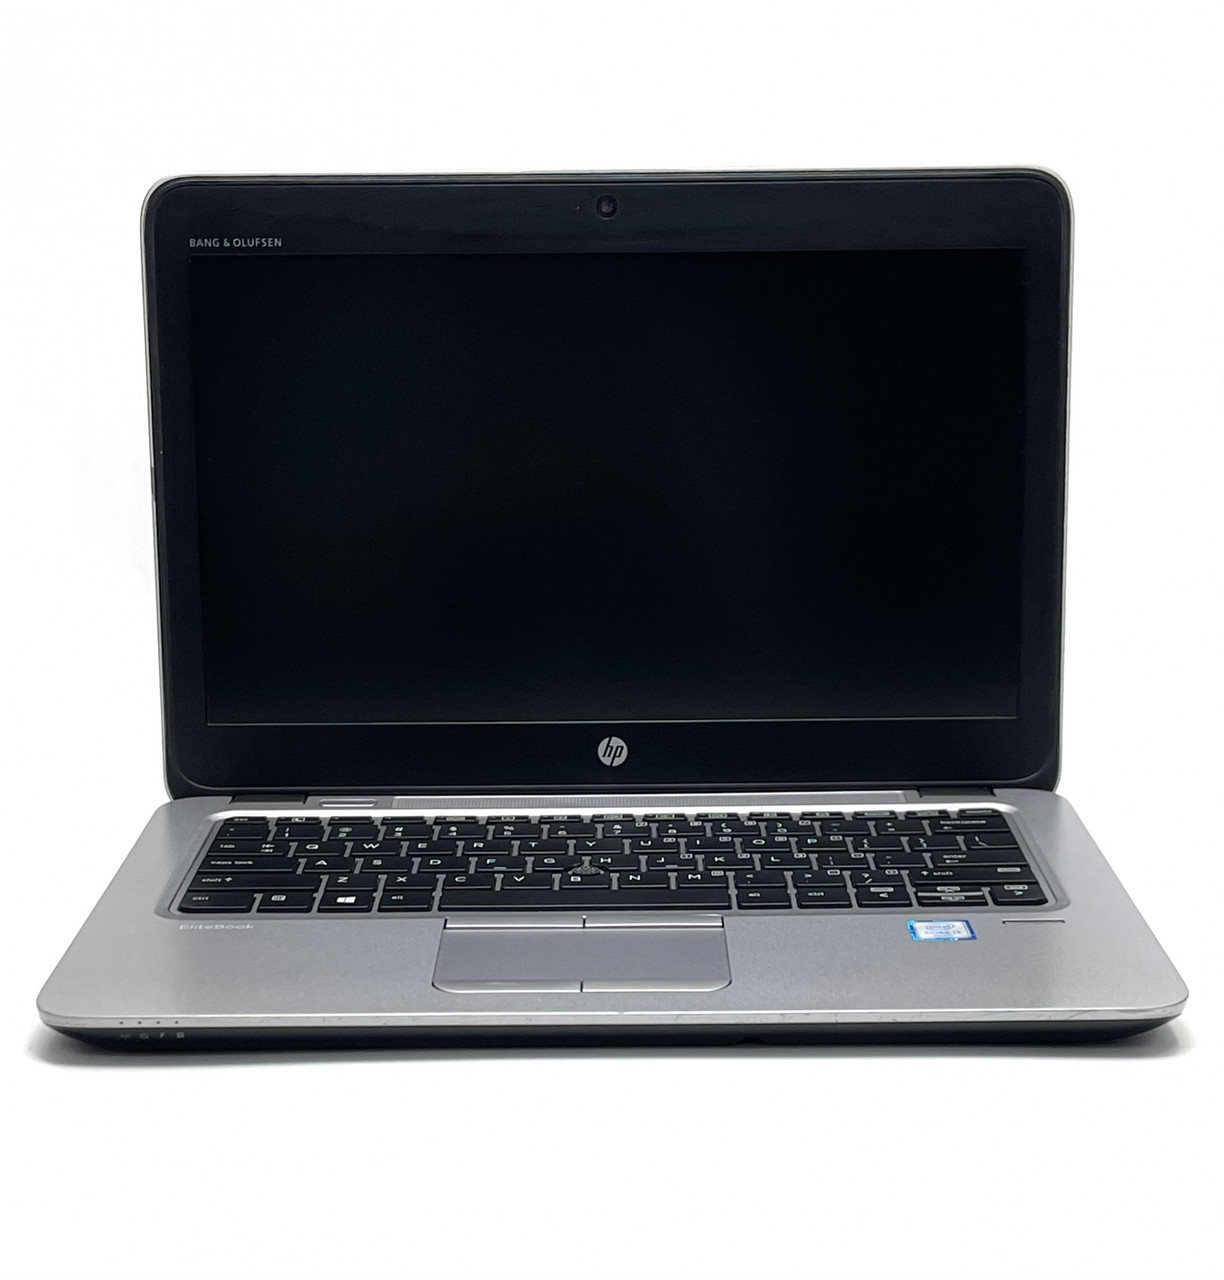 Ноутбук HP EliteBook 820 G3 12,5 Intel Core i3 4 Гб 180 Гб Refurbished